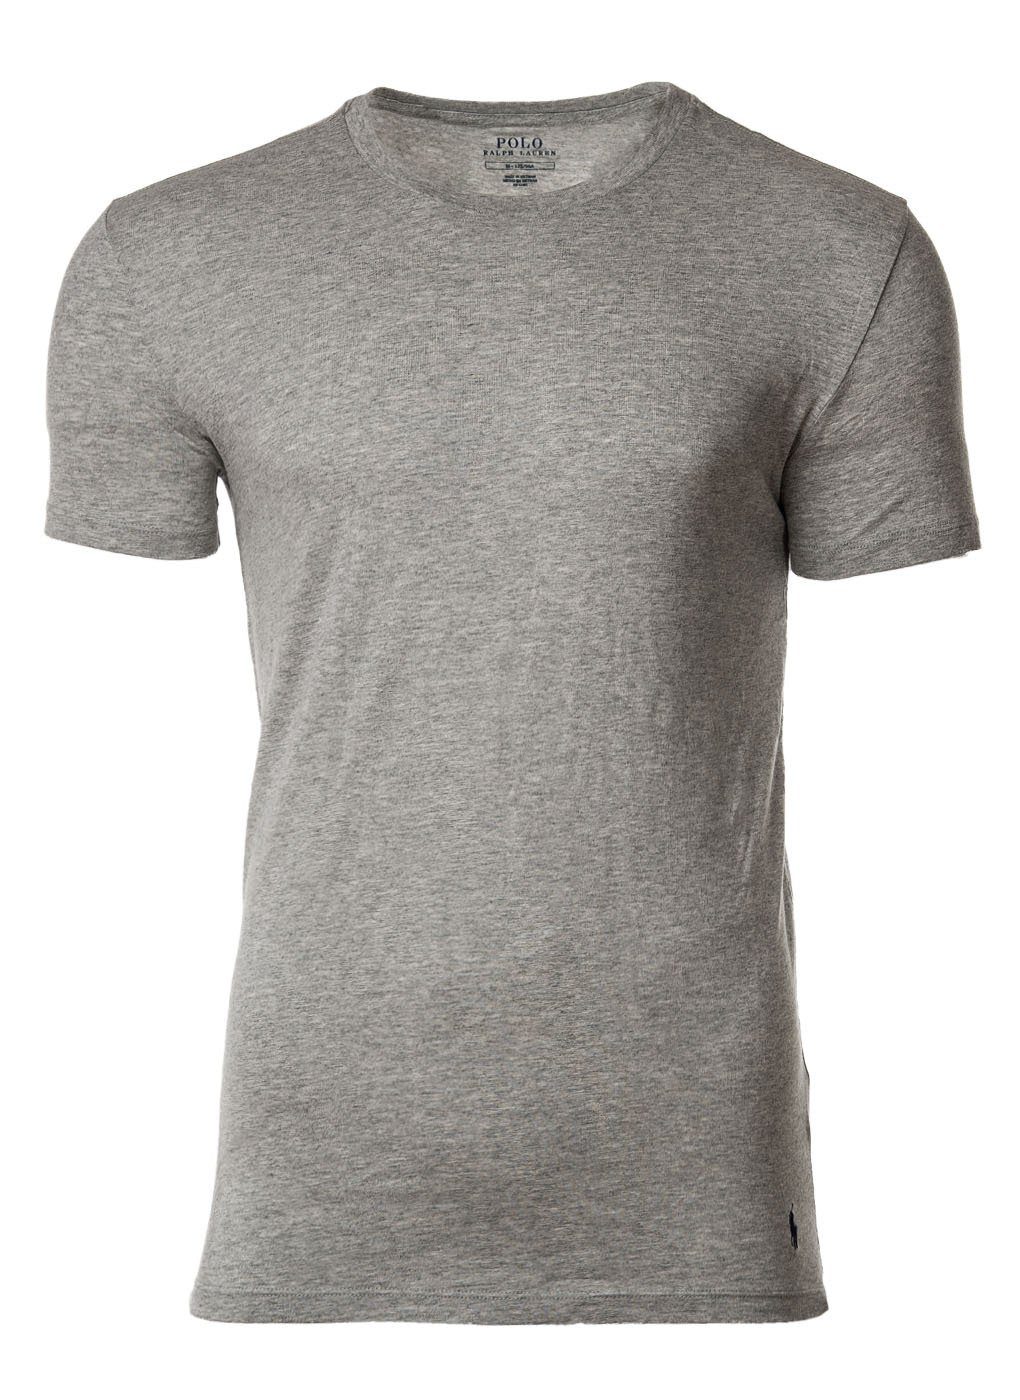 T-Shirts, Rundhals, Ralph Lauren Polo Halbarm schwarz/weiß/grau Herren 3er Pack T-Shirt